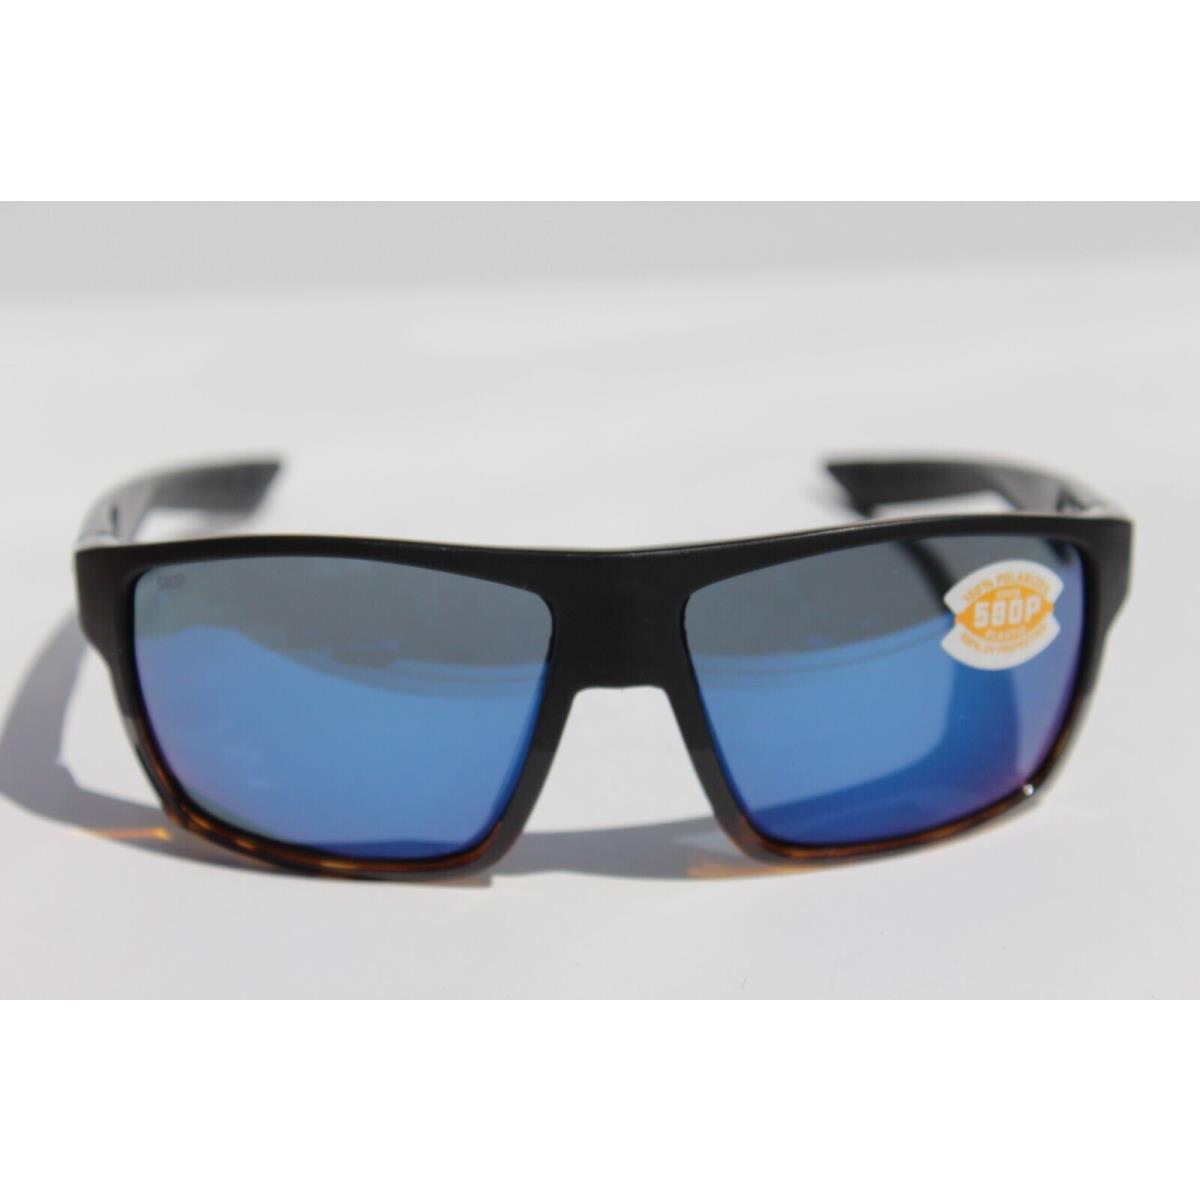 Costa Del Mar sunglasses  - Black Tortoise Frame, Blue Lens 1